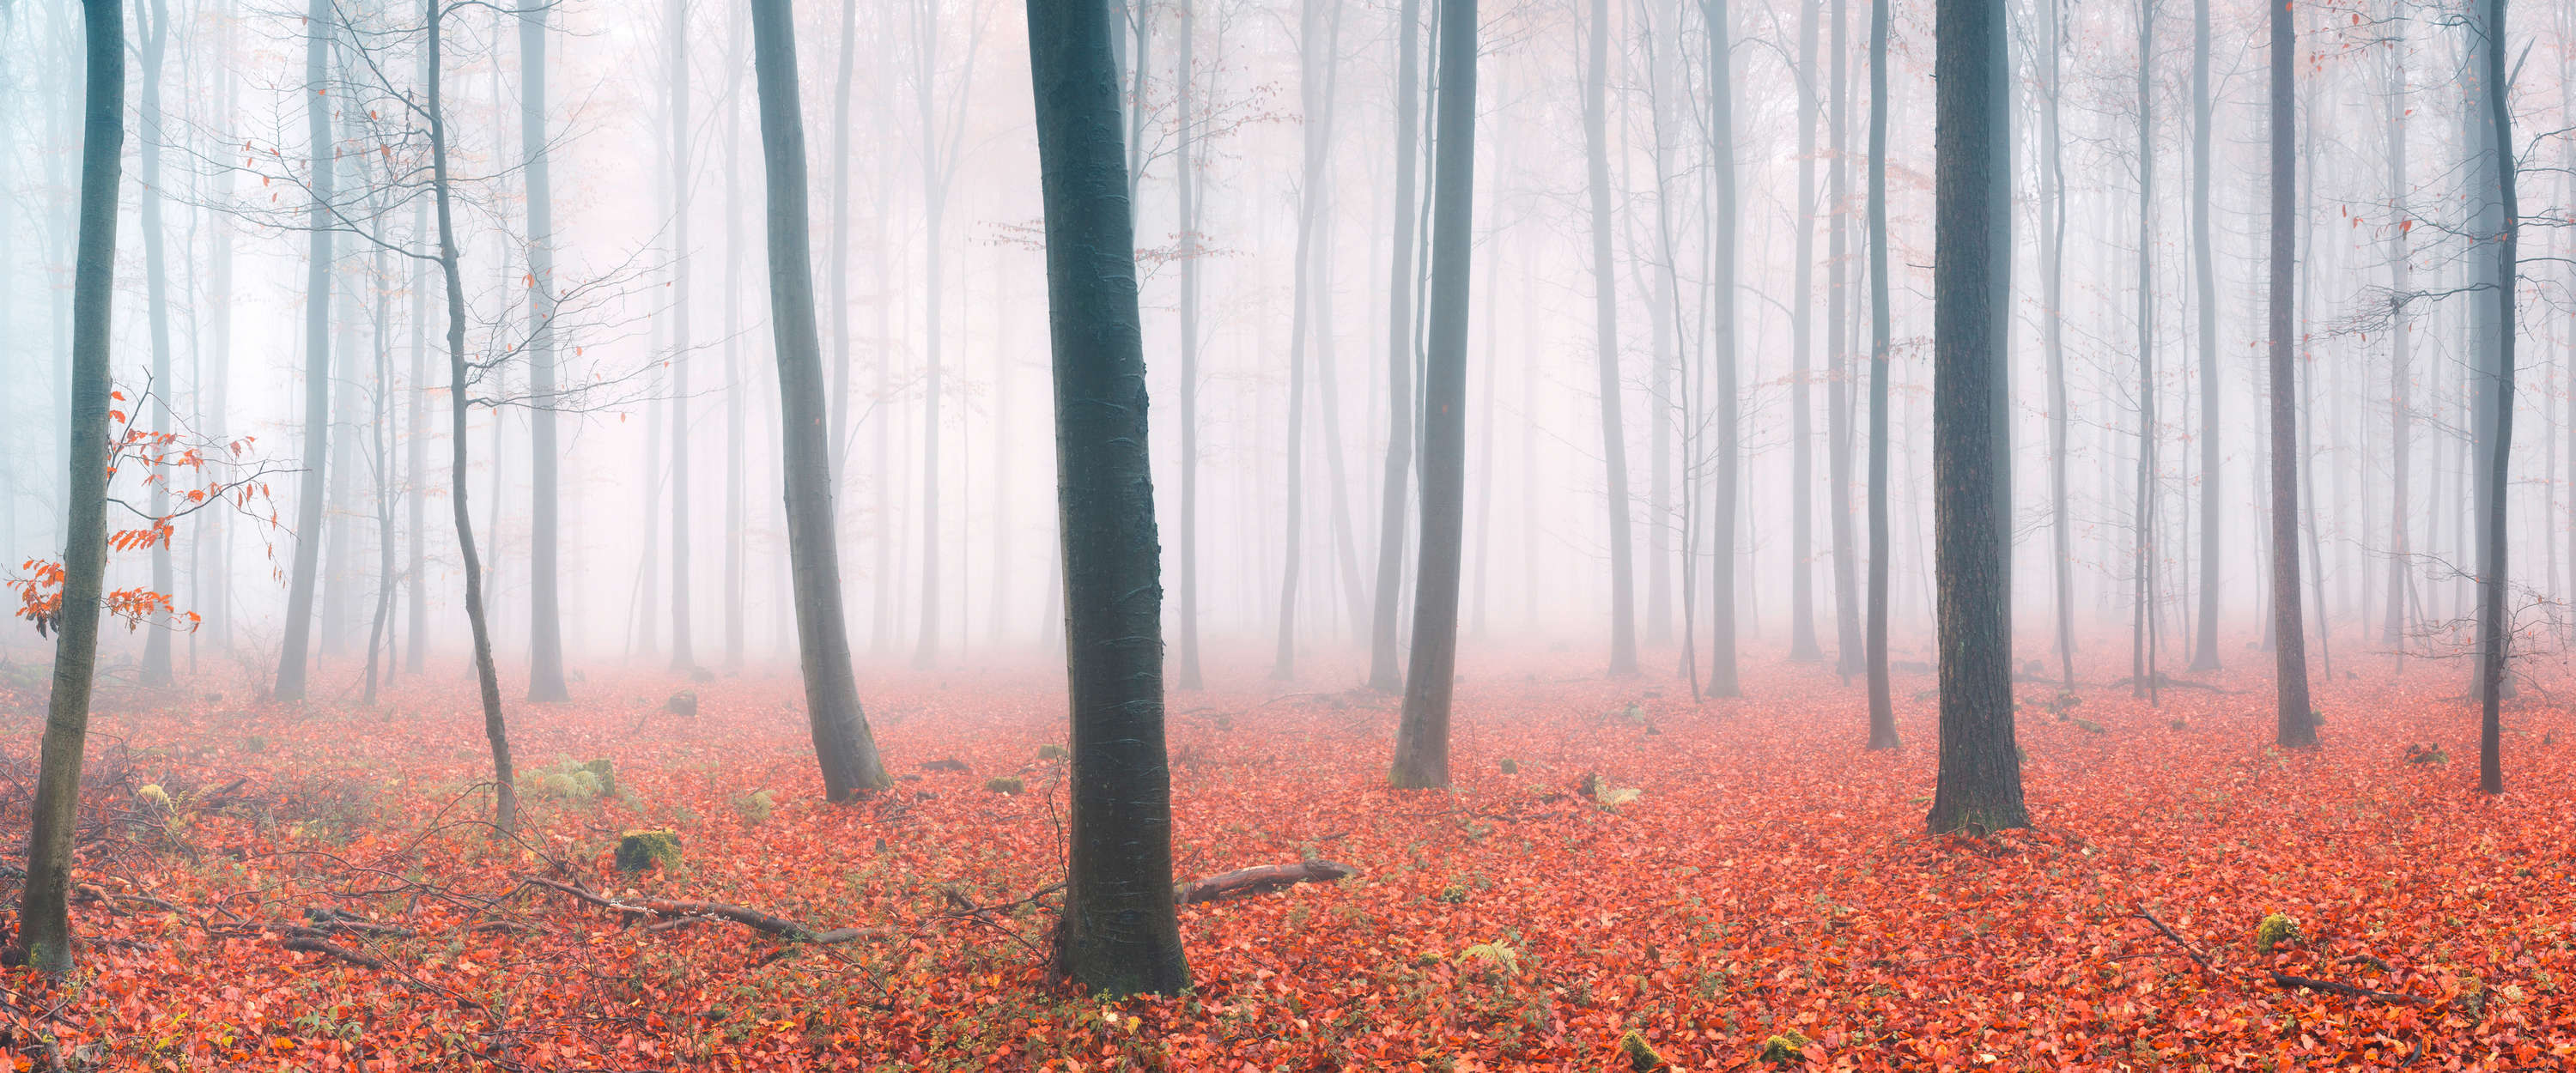             Papier peint forêt nuageuse avec feuilles d'automne rouges
        